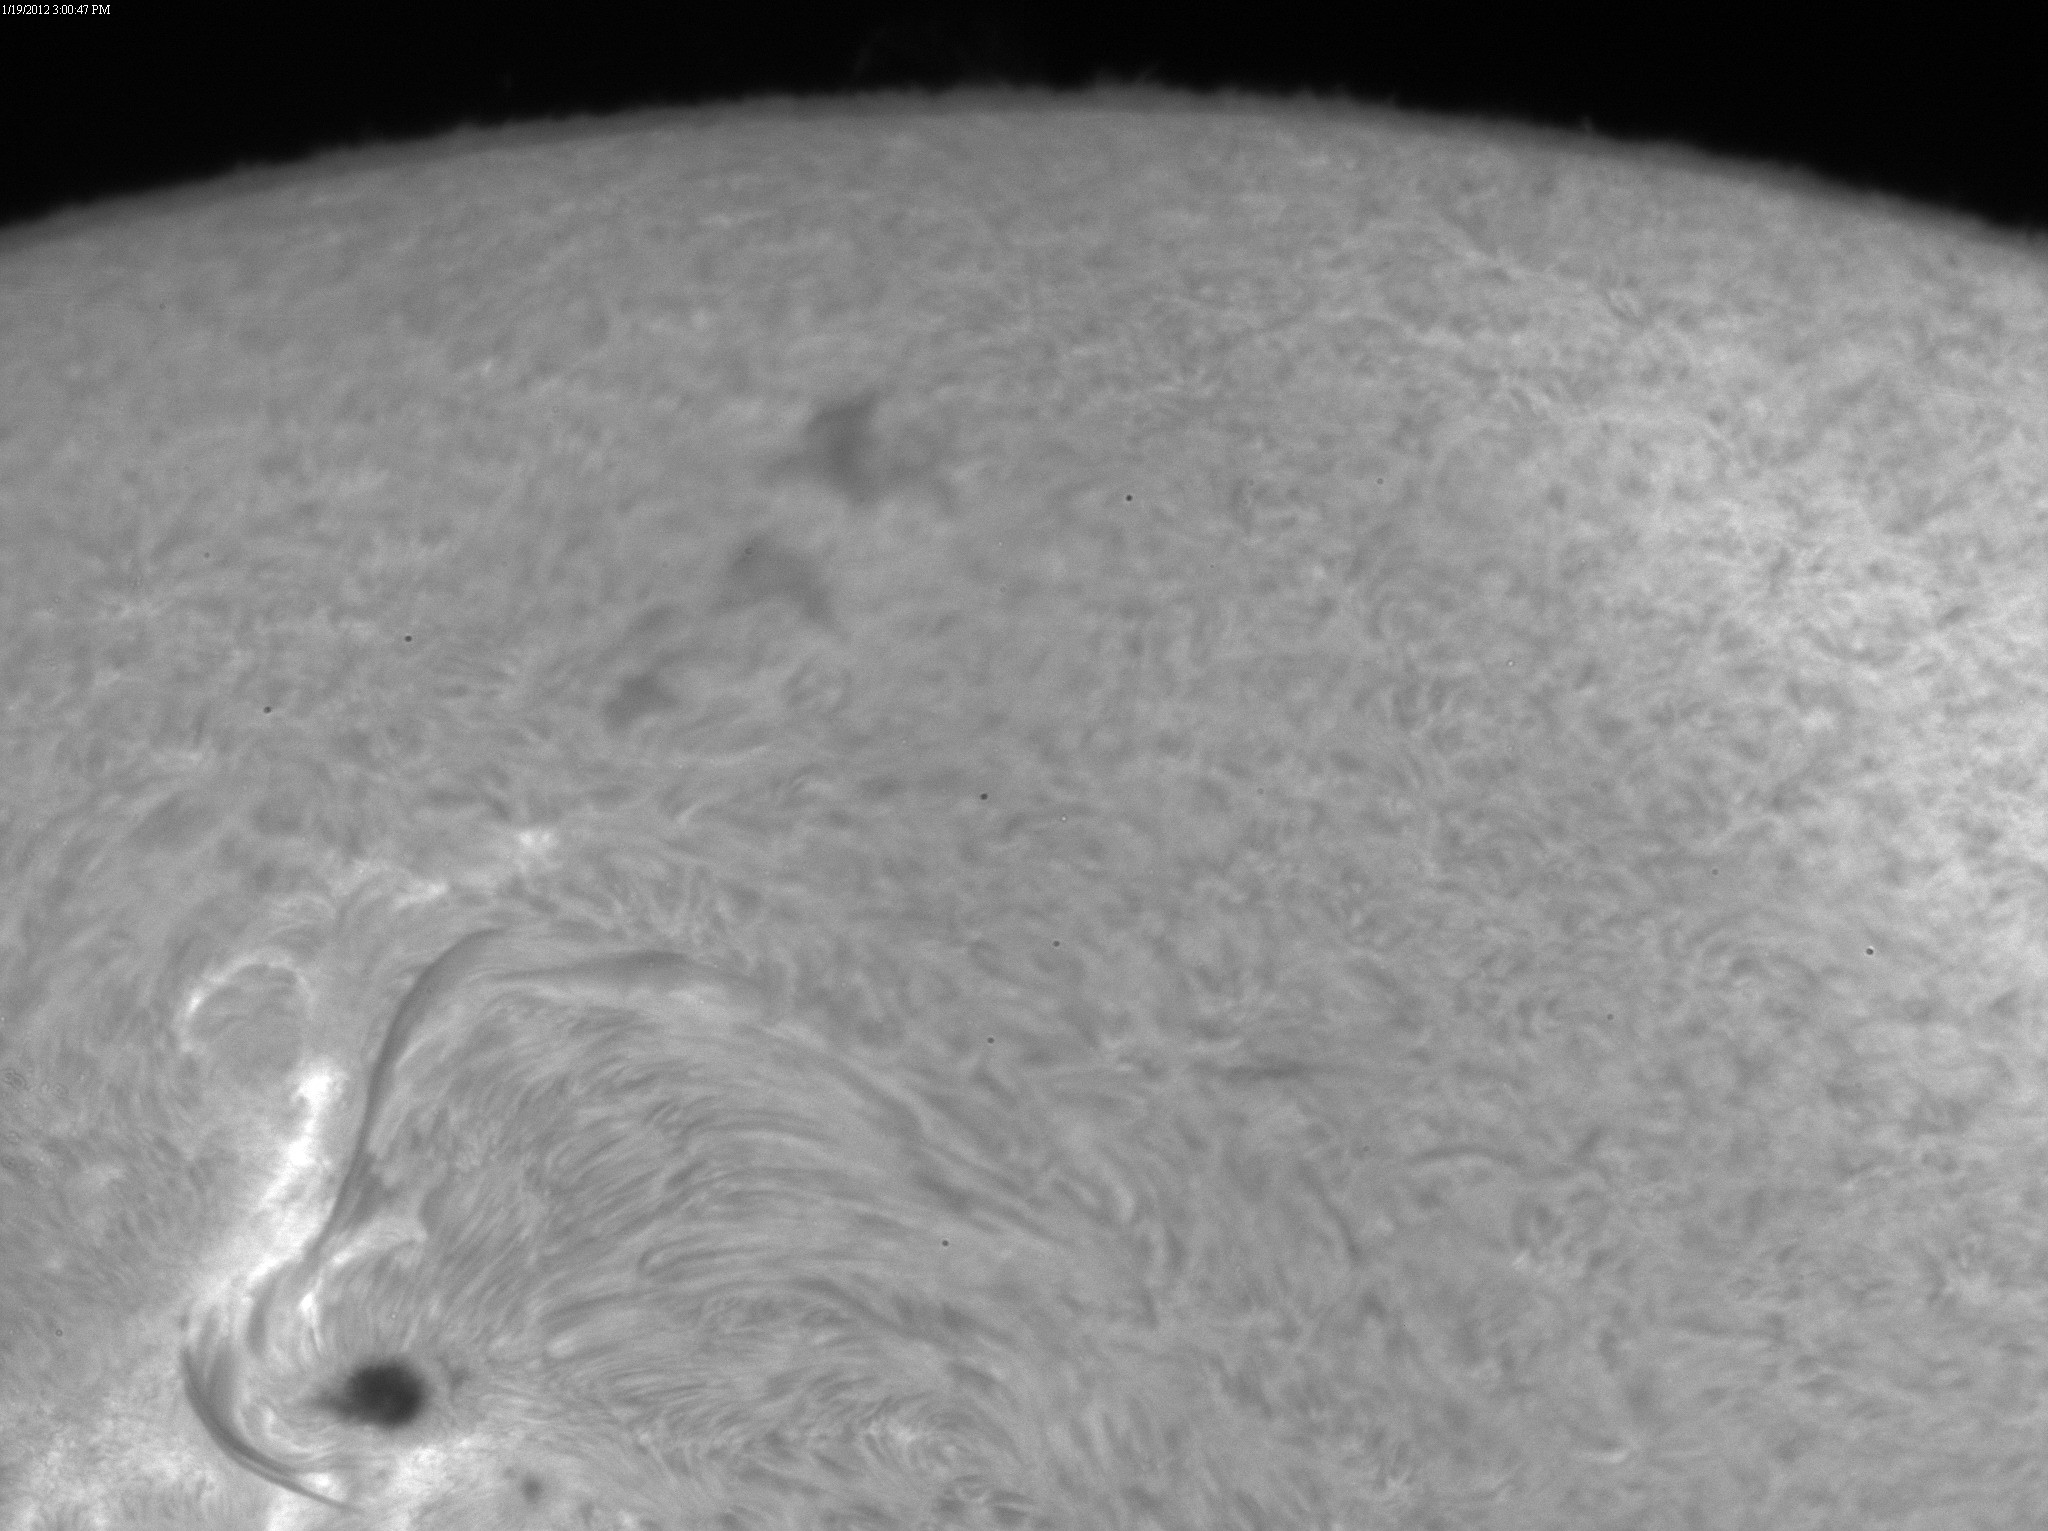 2012 Jan 19 Sun -AR11401, 11402, 11405 and 11407